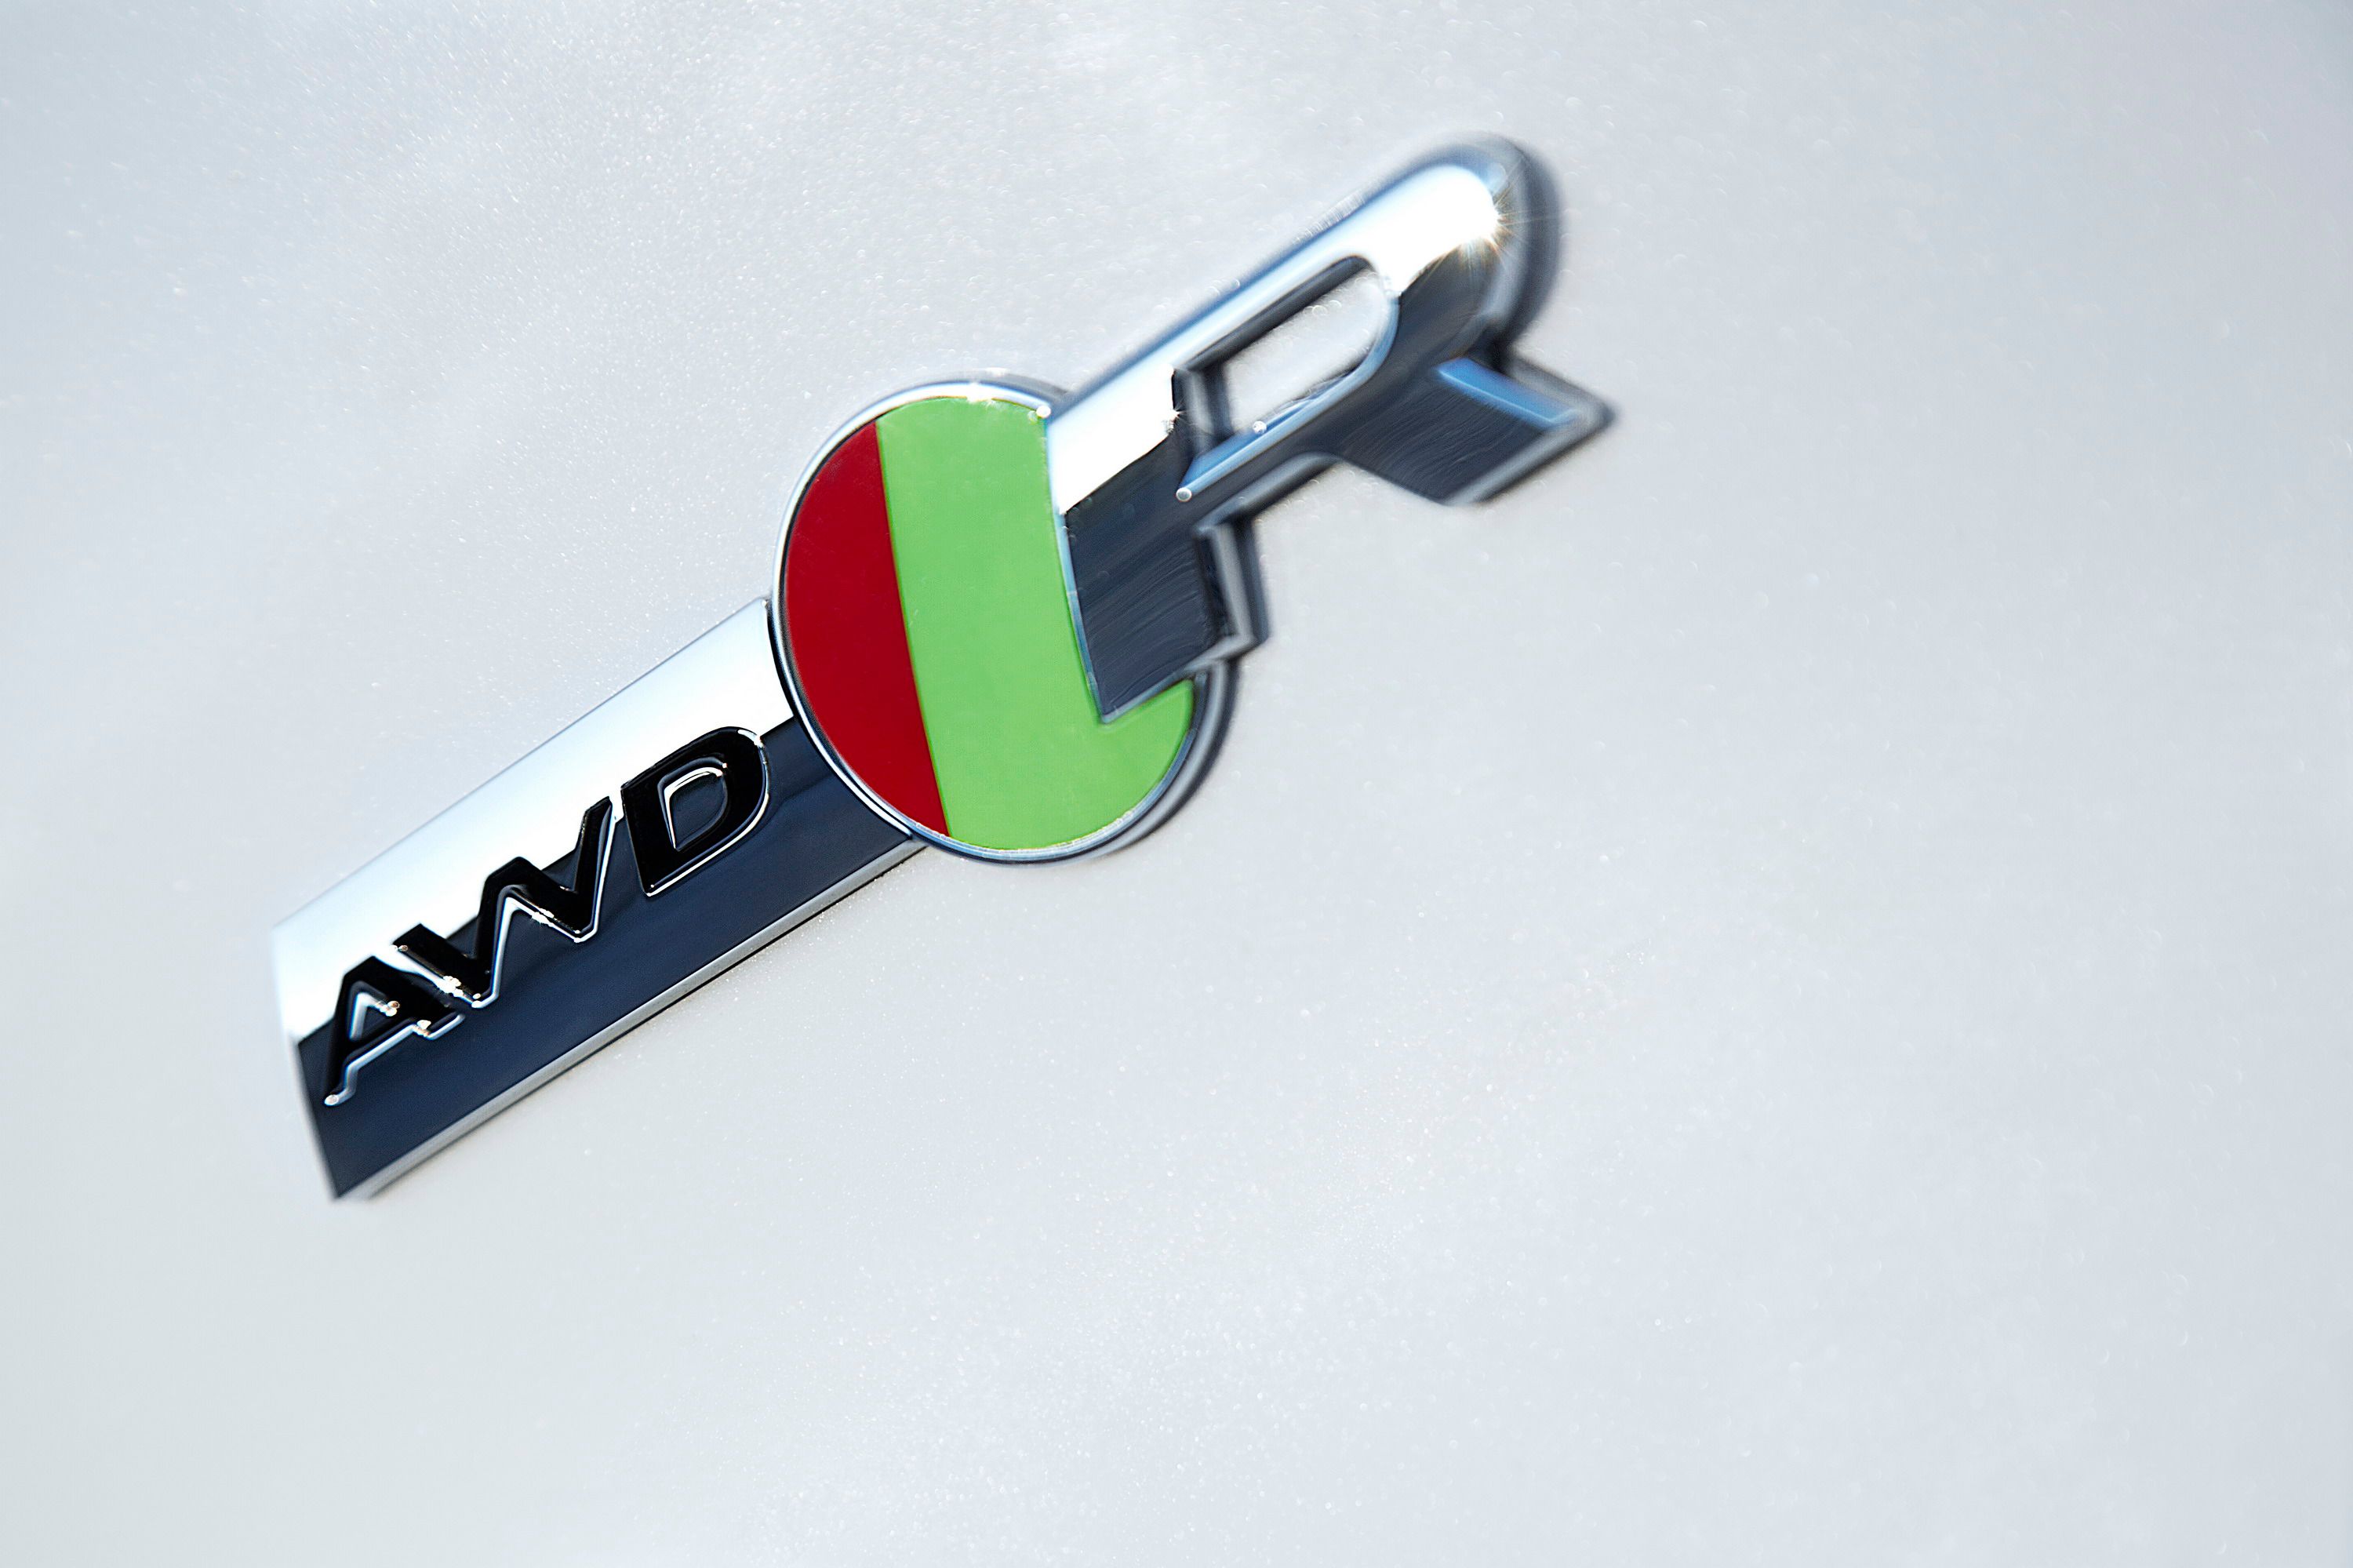 2016 Jaguar F-Type AWD Convertible